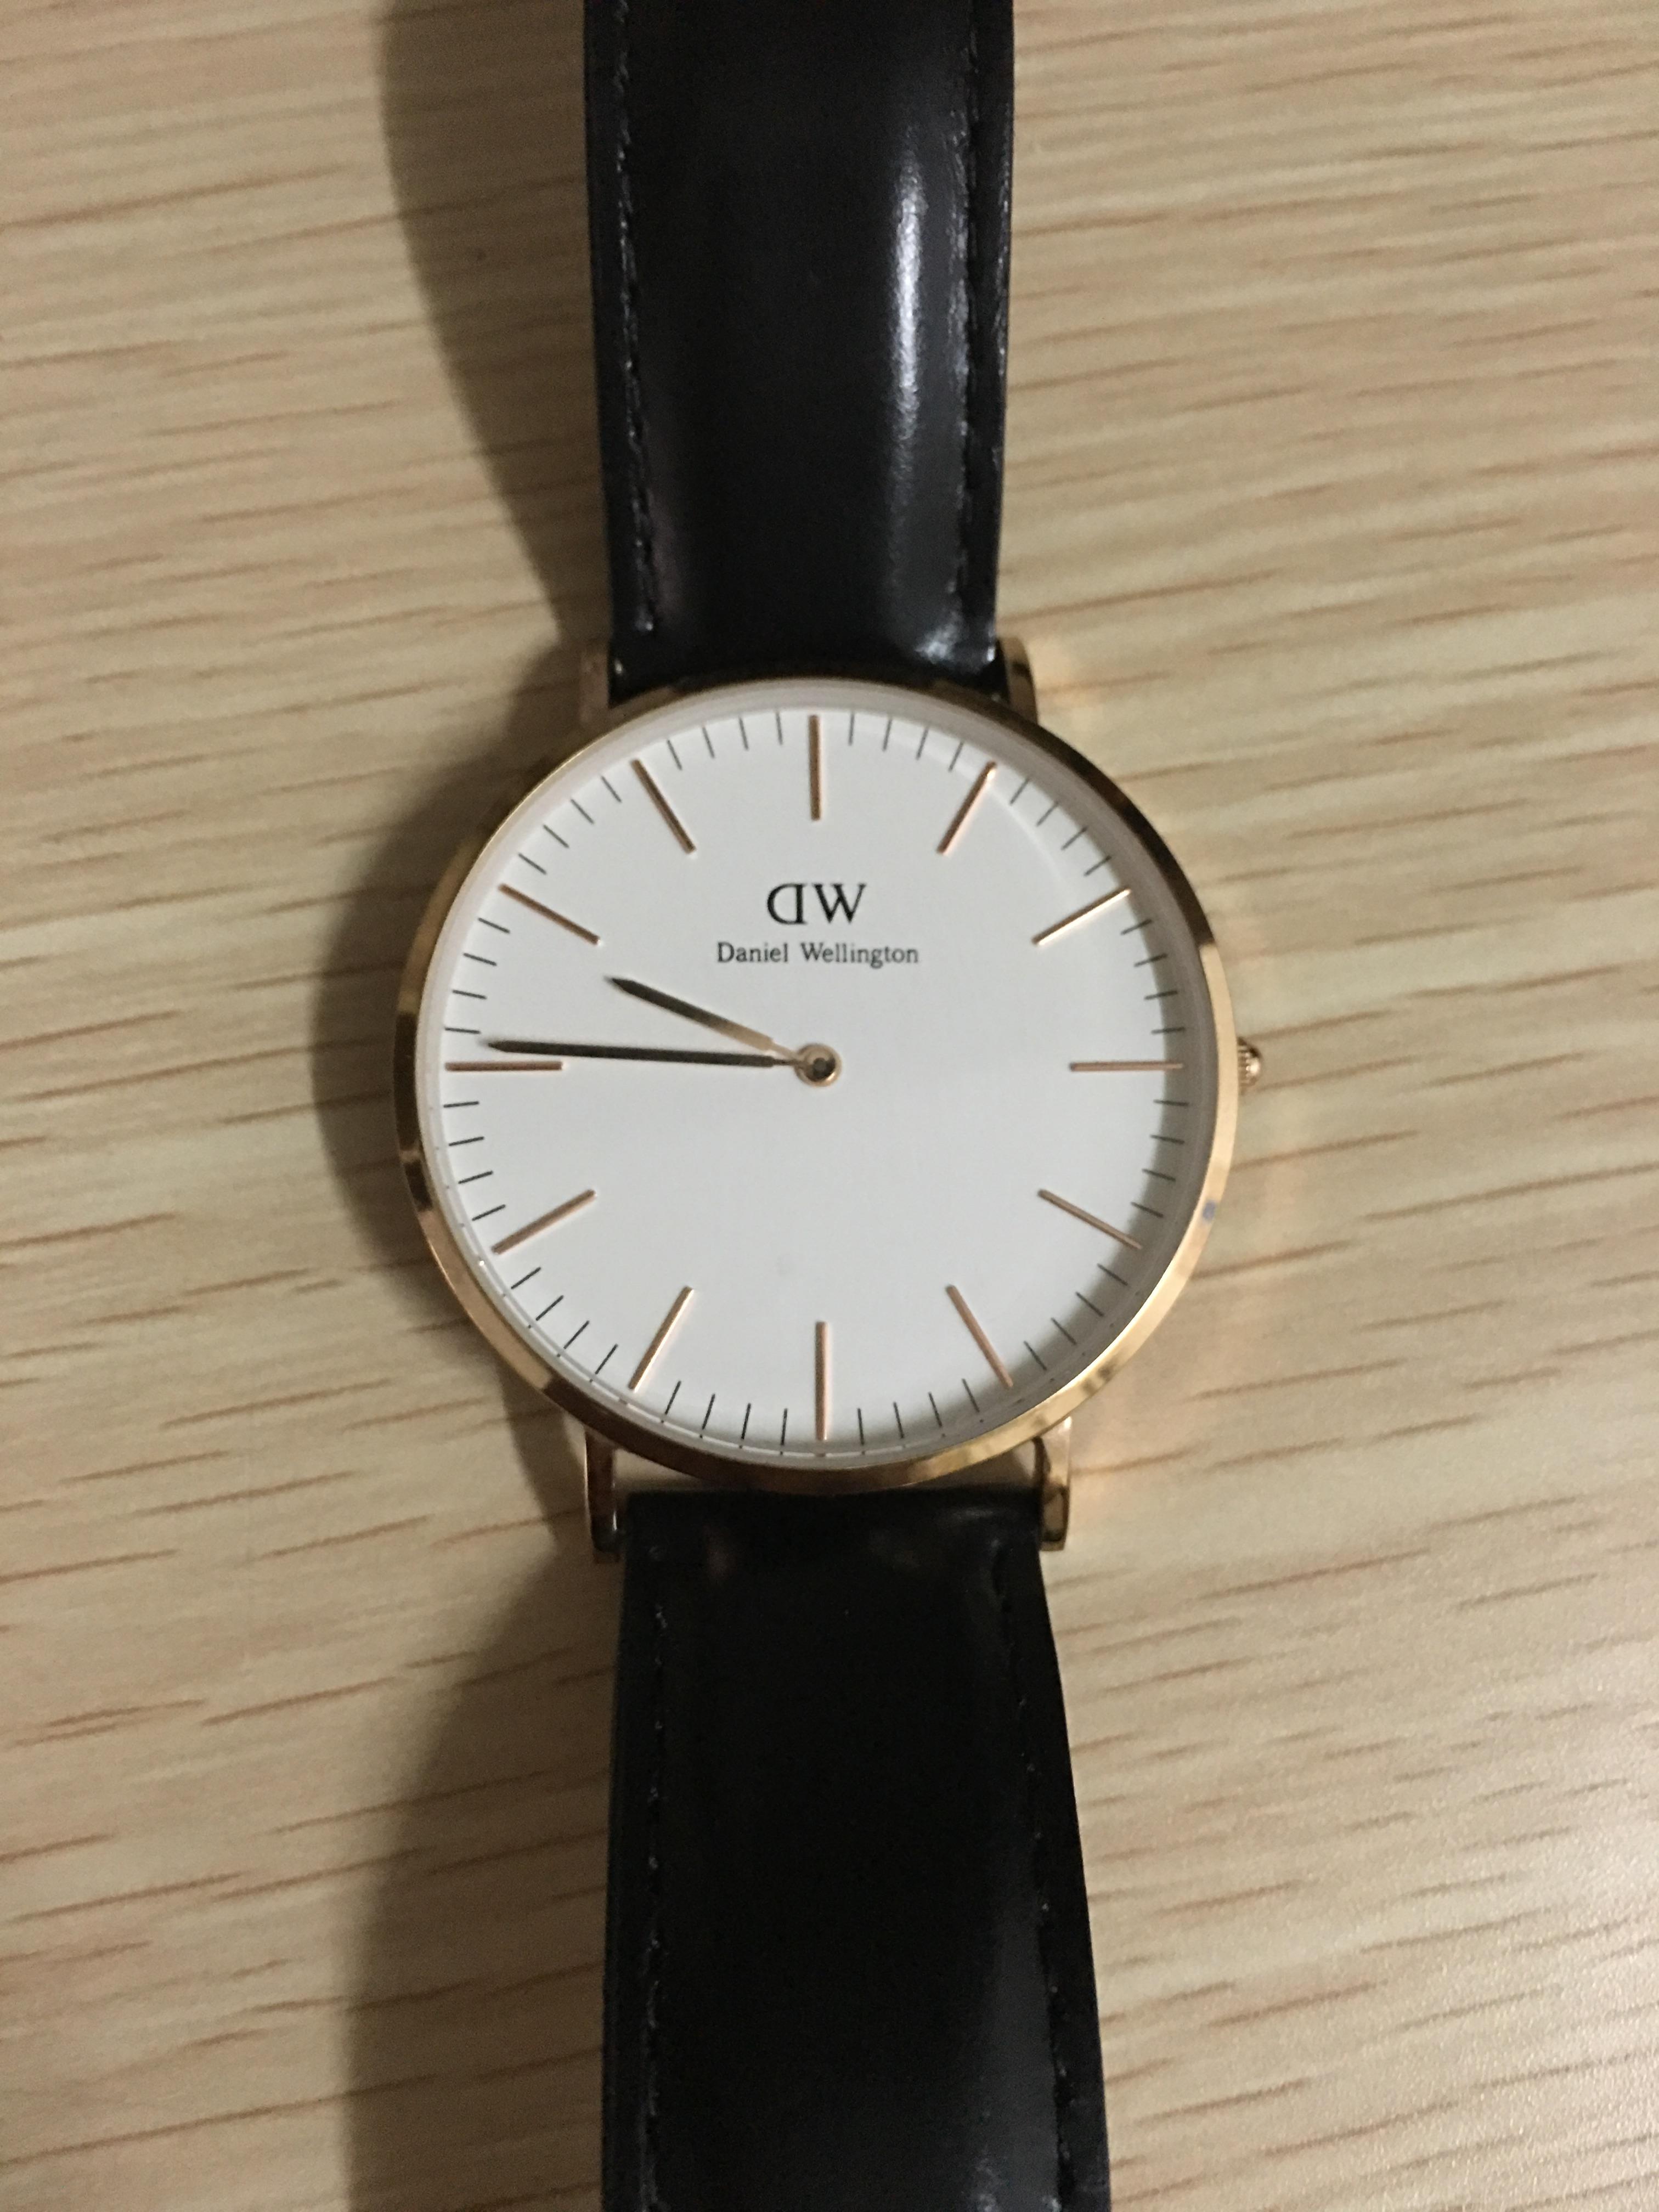 想买一只dw的手表,请教一下各位大神,在哪里买